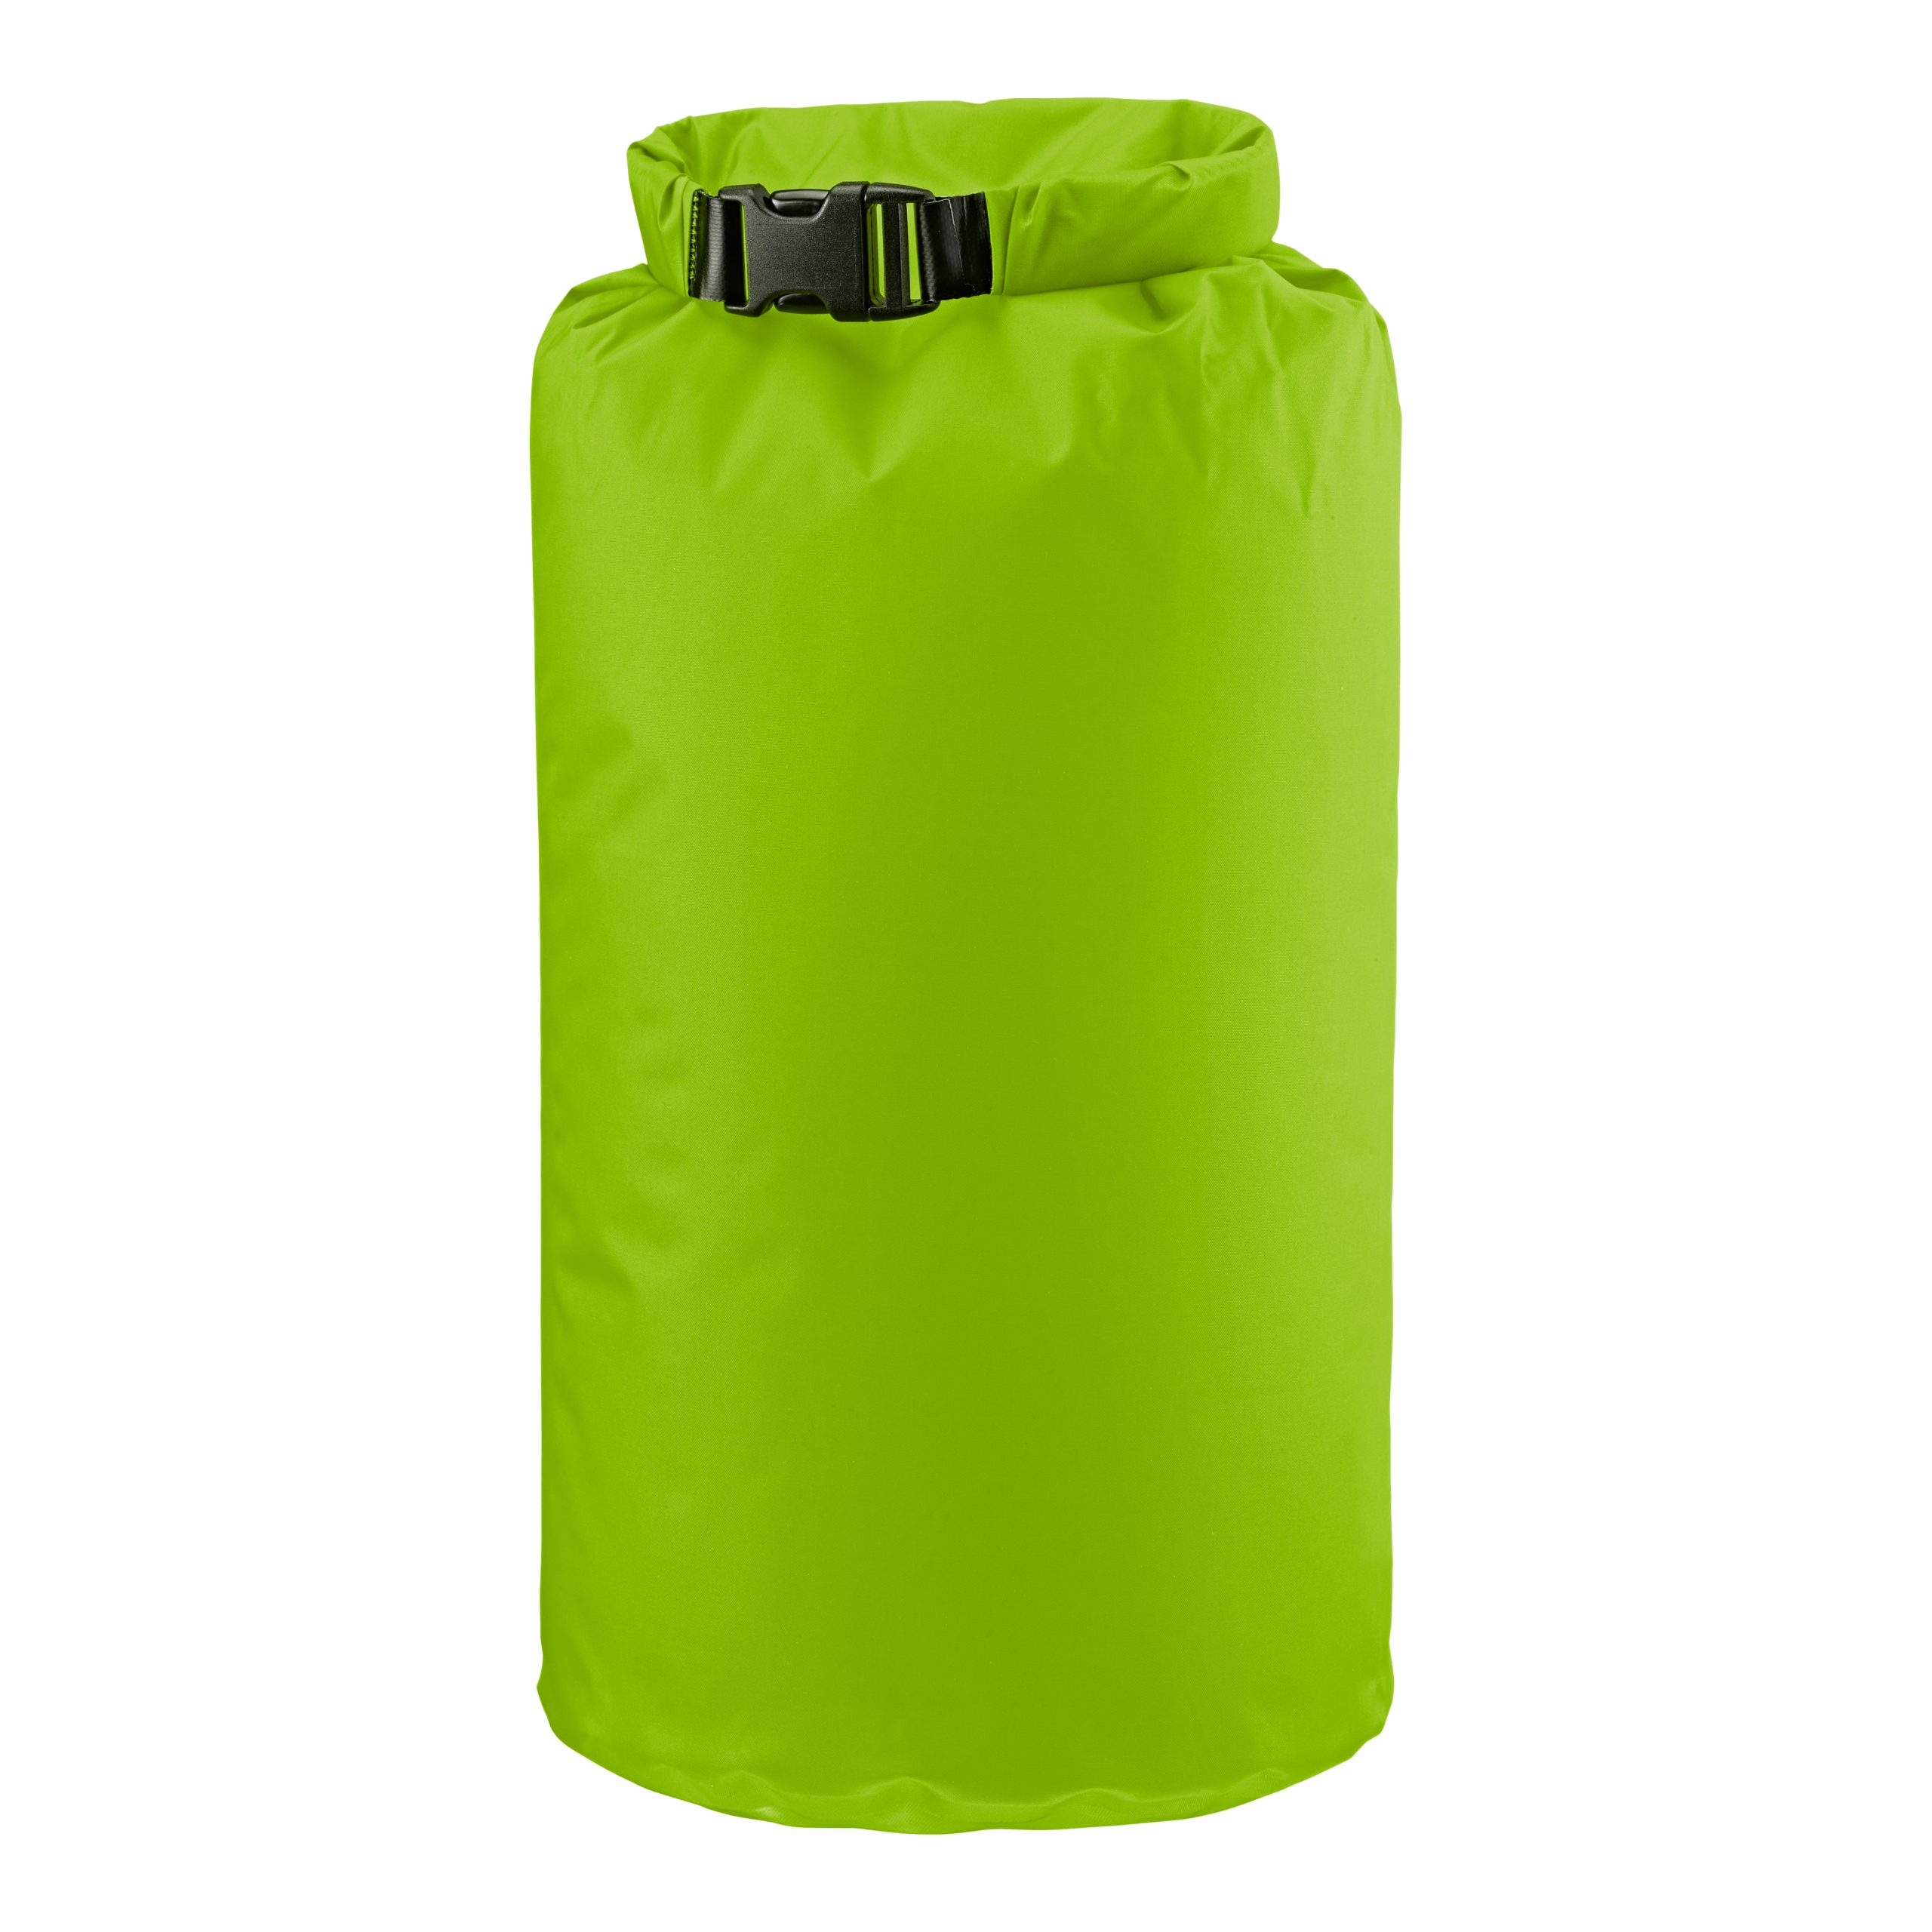 Zip Dry Bag - Waterproof Zipper Bag | KUIU